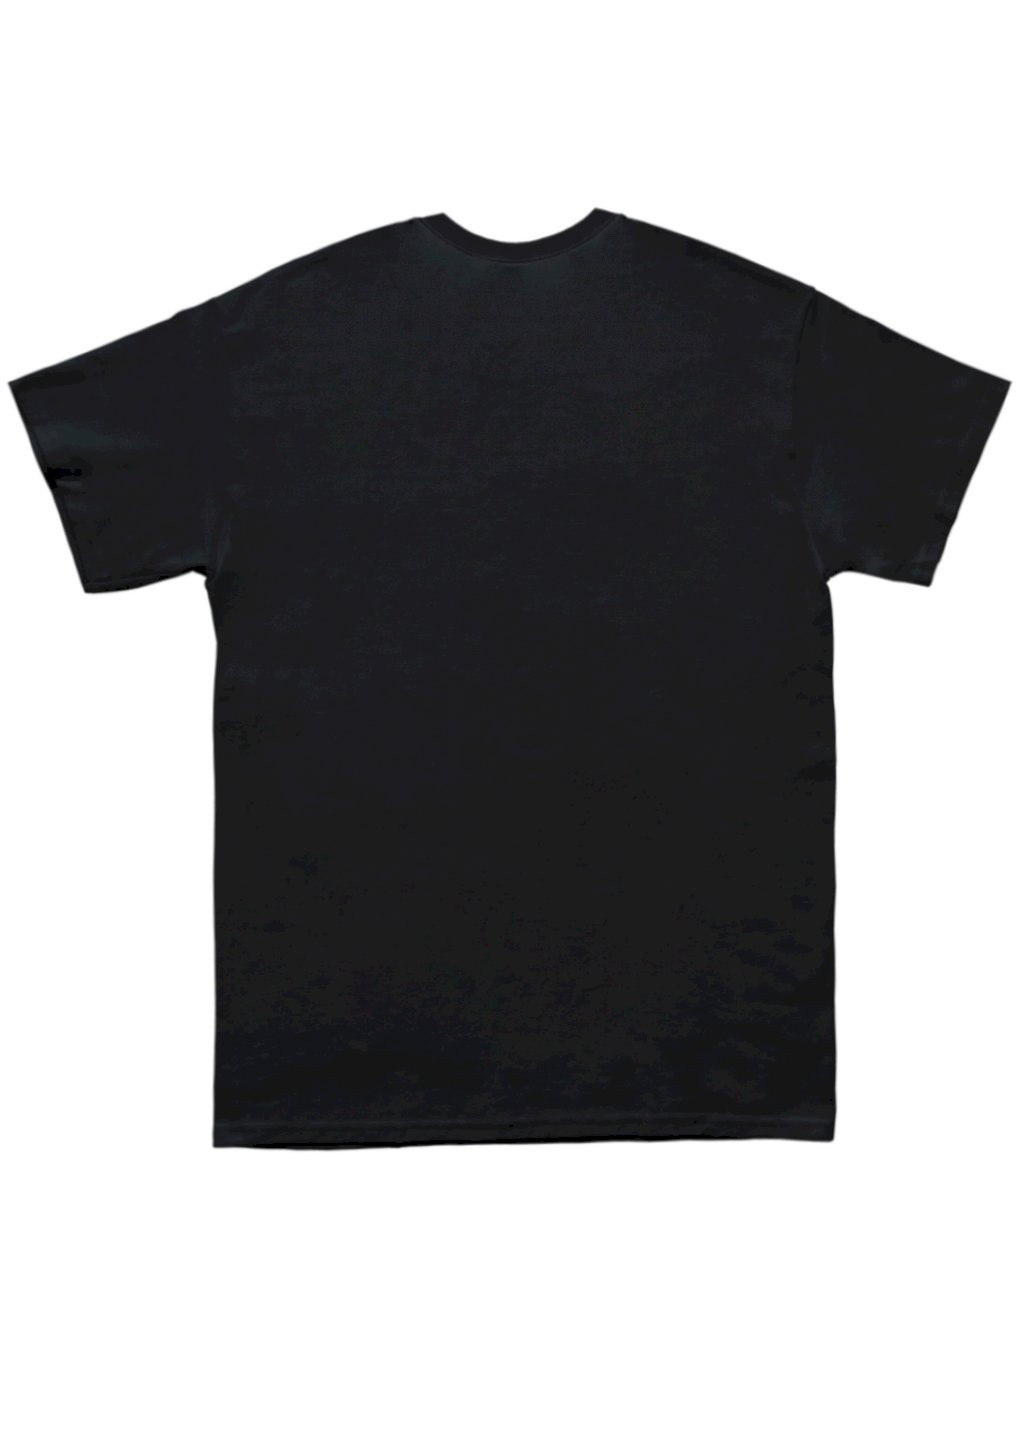 Черная футболка мужская черная "космонавт з планетами-кулями" Trace of Space